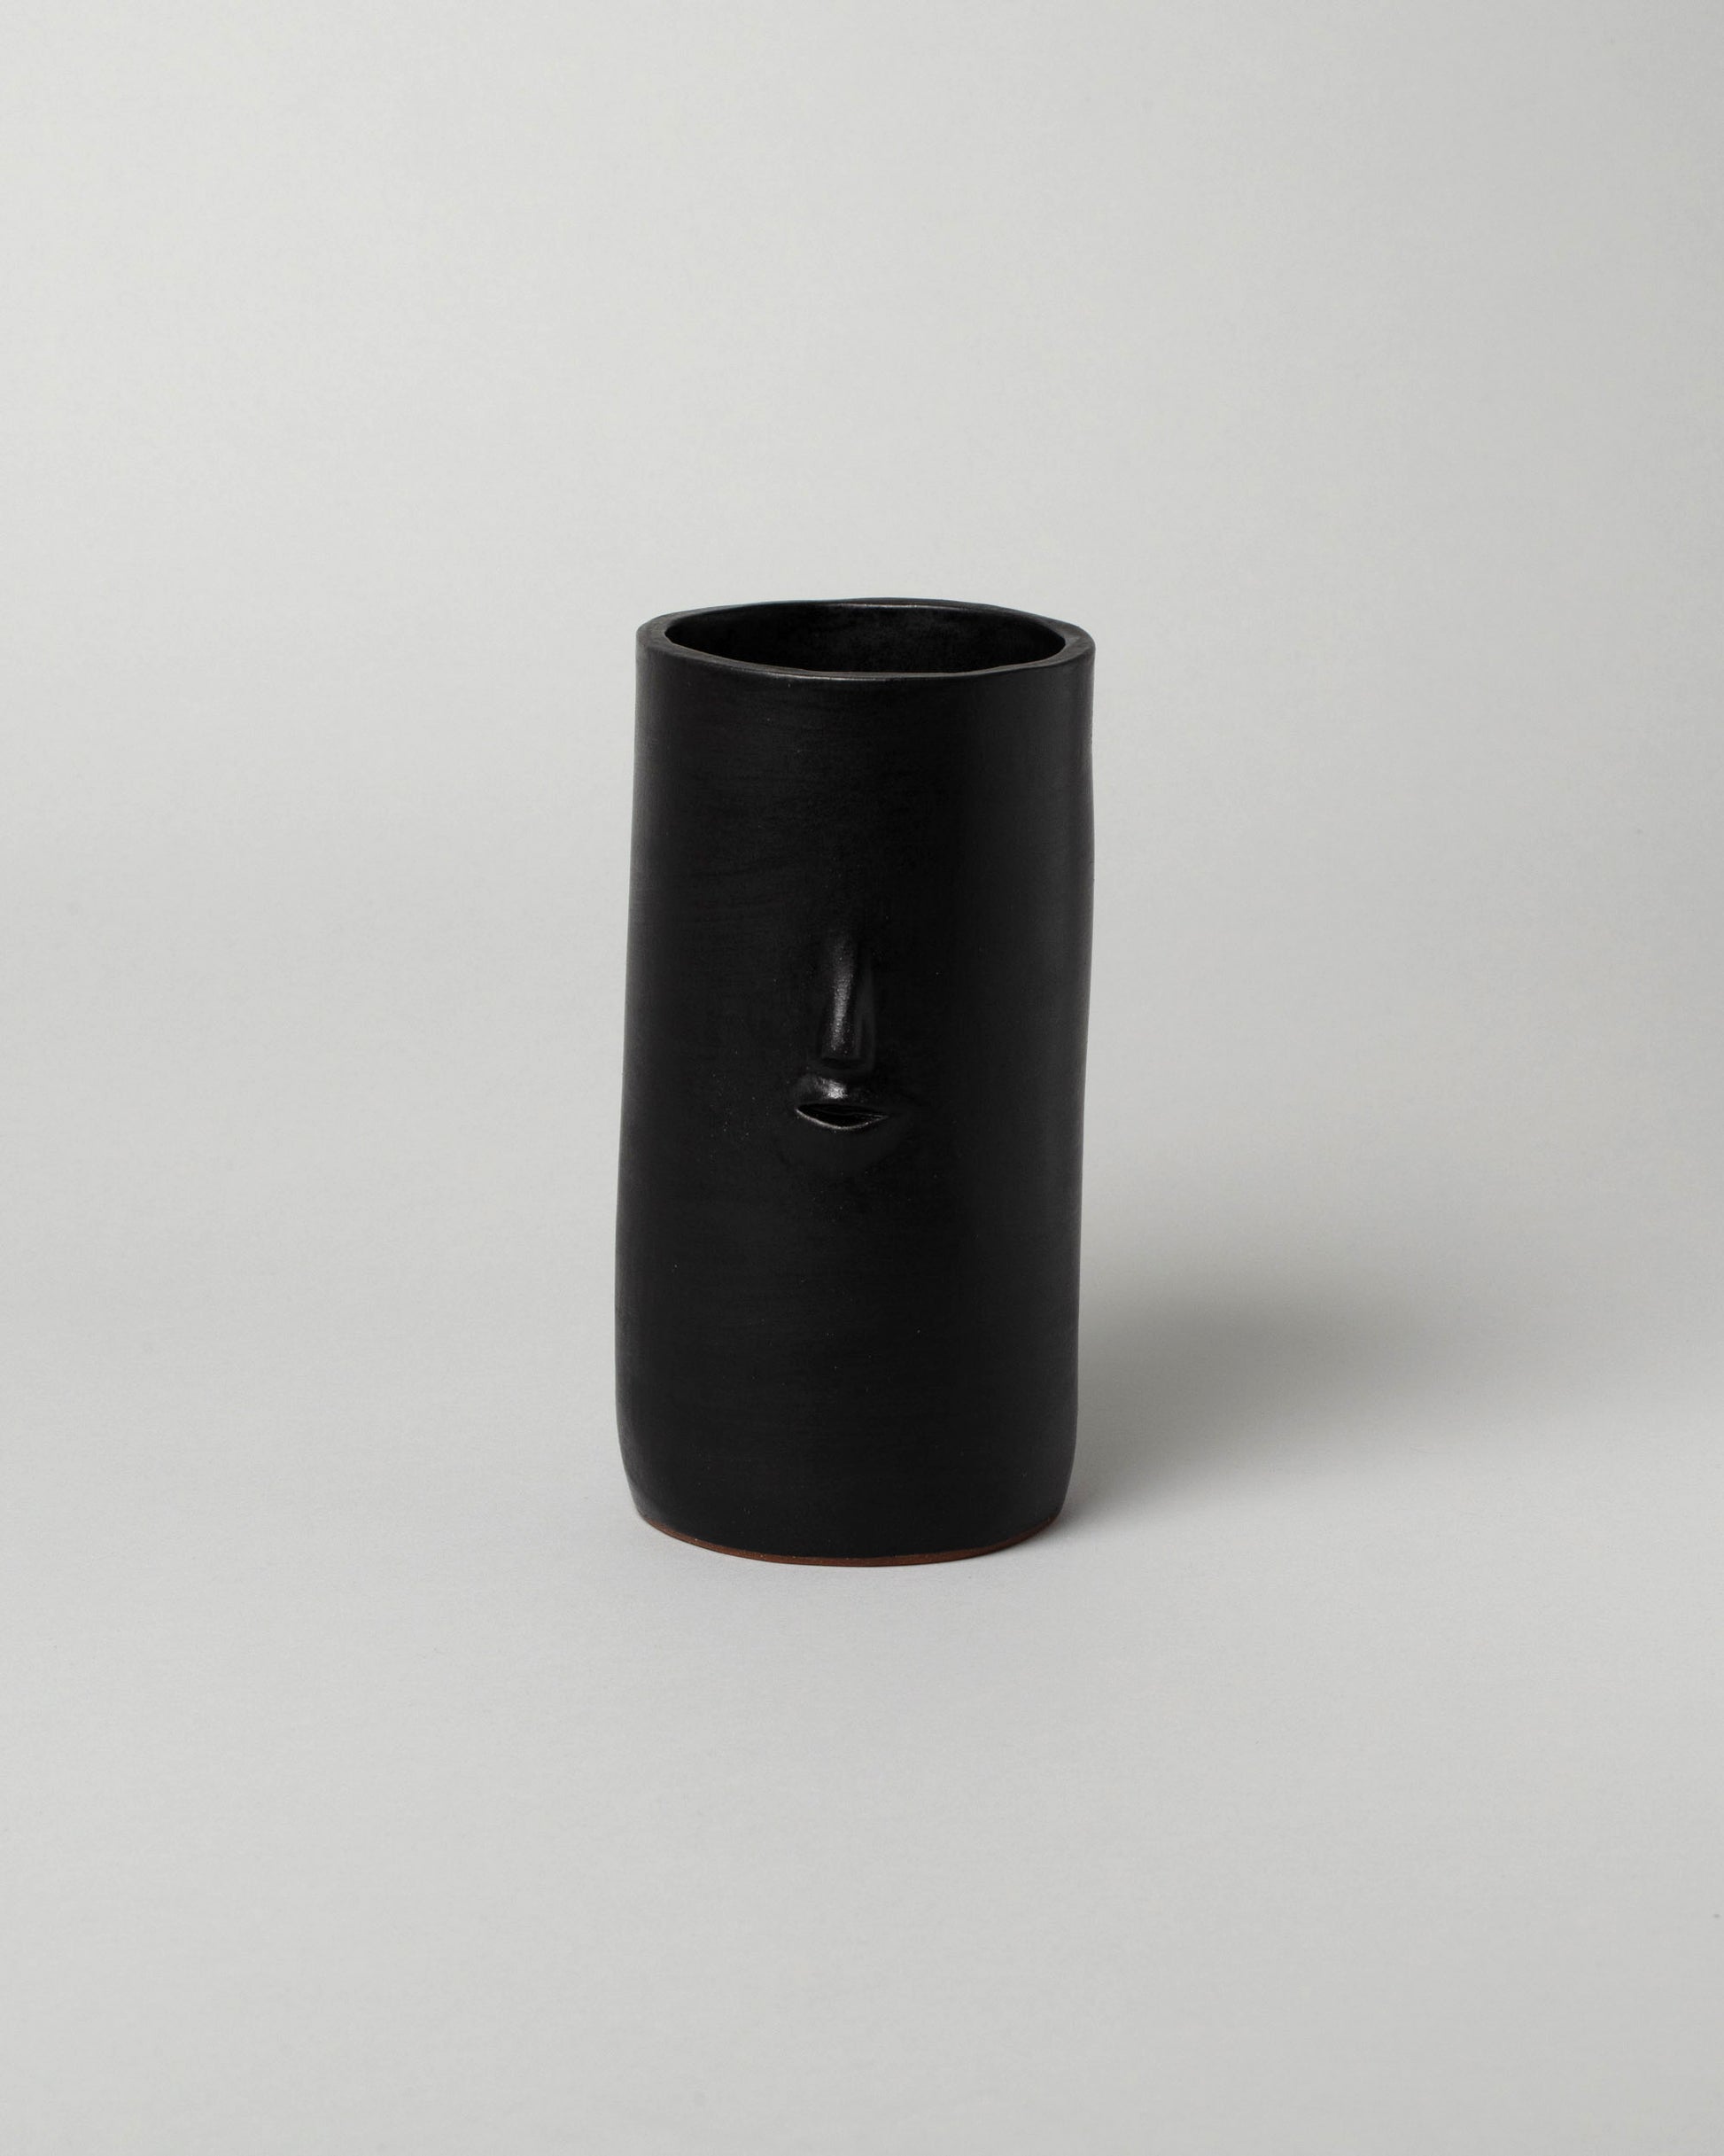 Rami Kim Matte Black Face Vase on light color background.